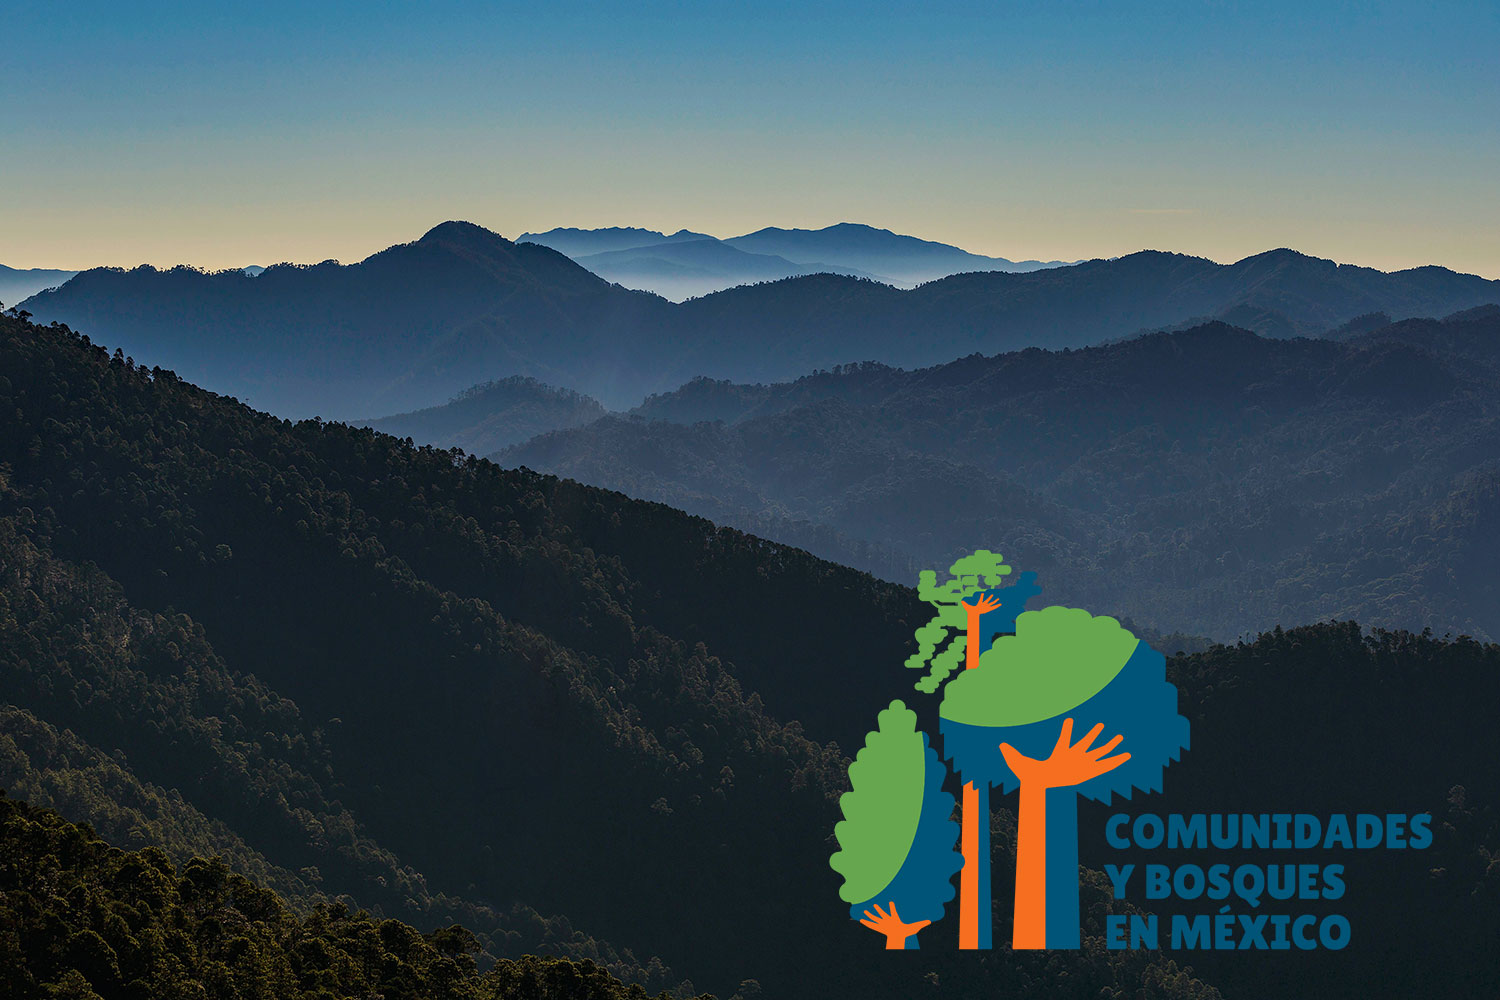 Presenta CCMSS el sitio web Comunidades y Bosques en México, que sistematiza, ordena y hace pública la información relevante más reciente sobre manejo forestal comunitario